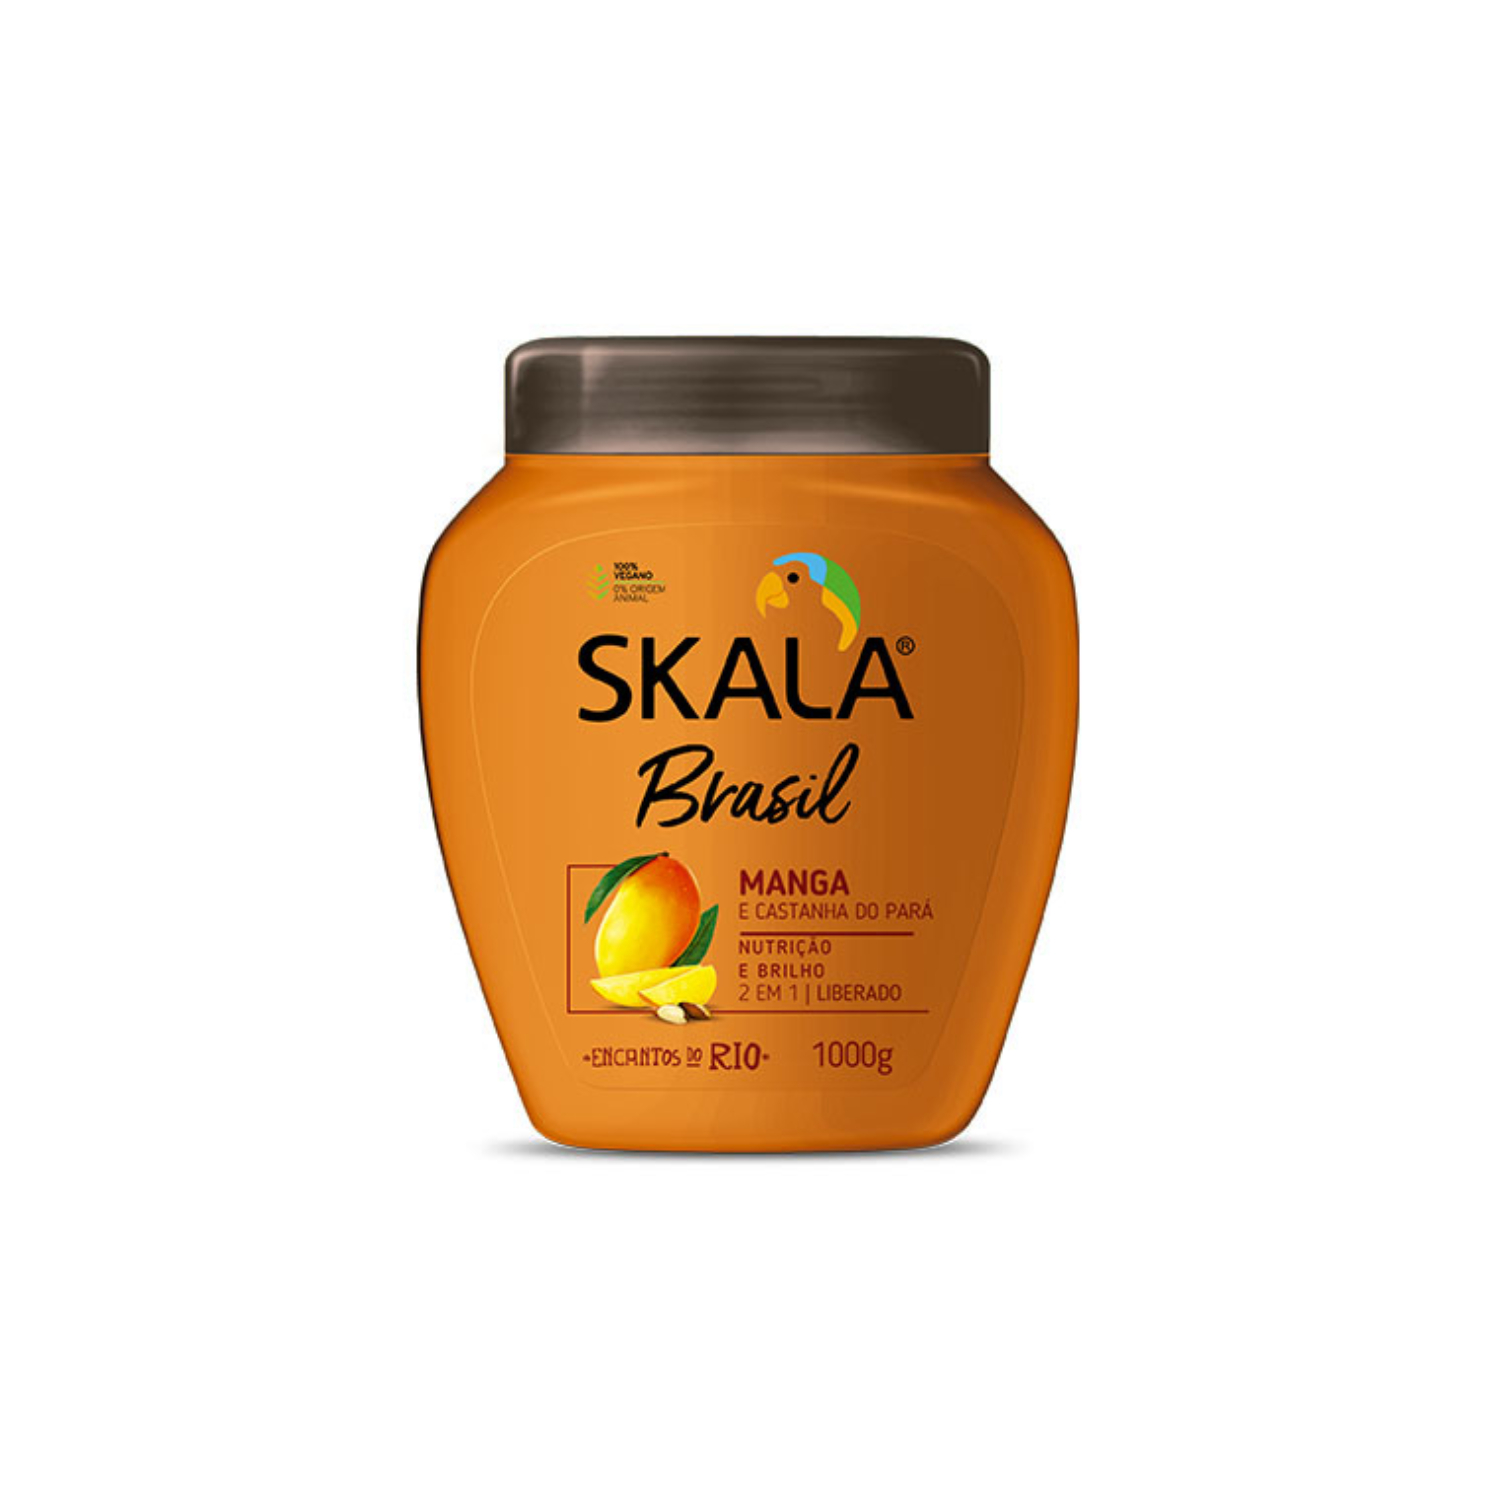 Tratamientos de Skala: ¿Para qué sirve cada uno? –